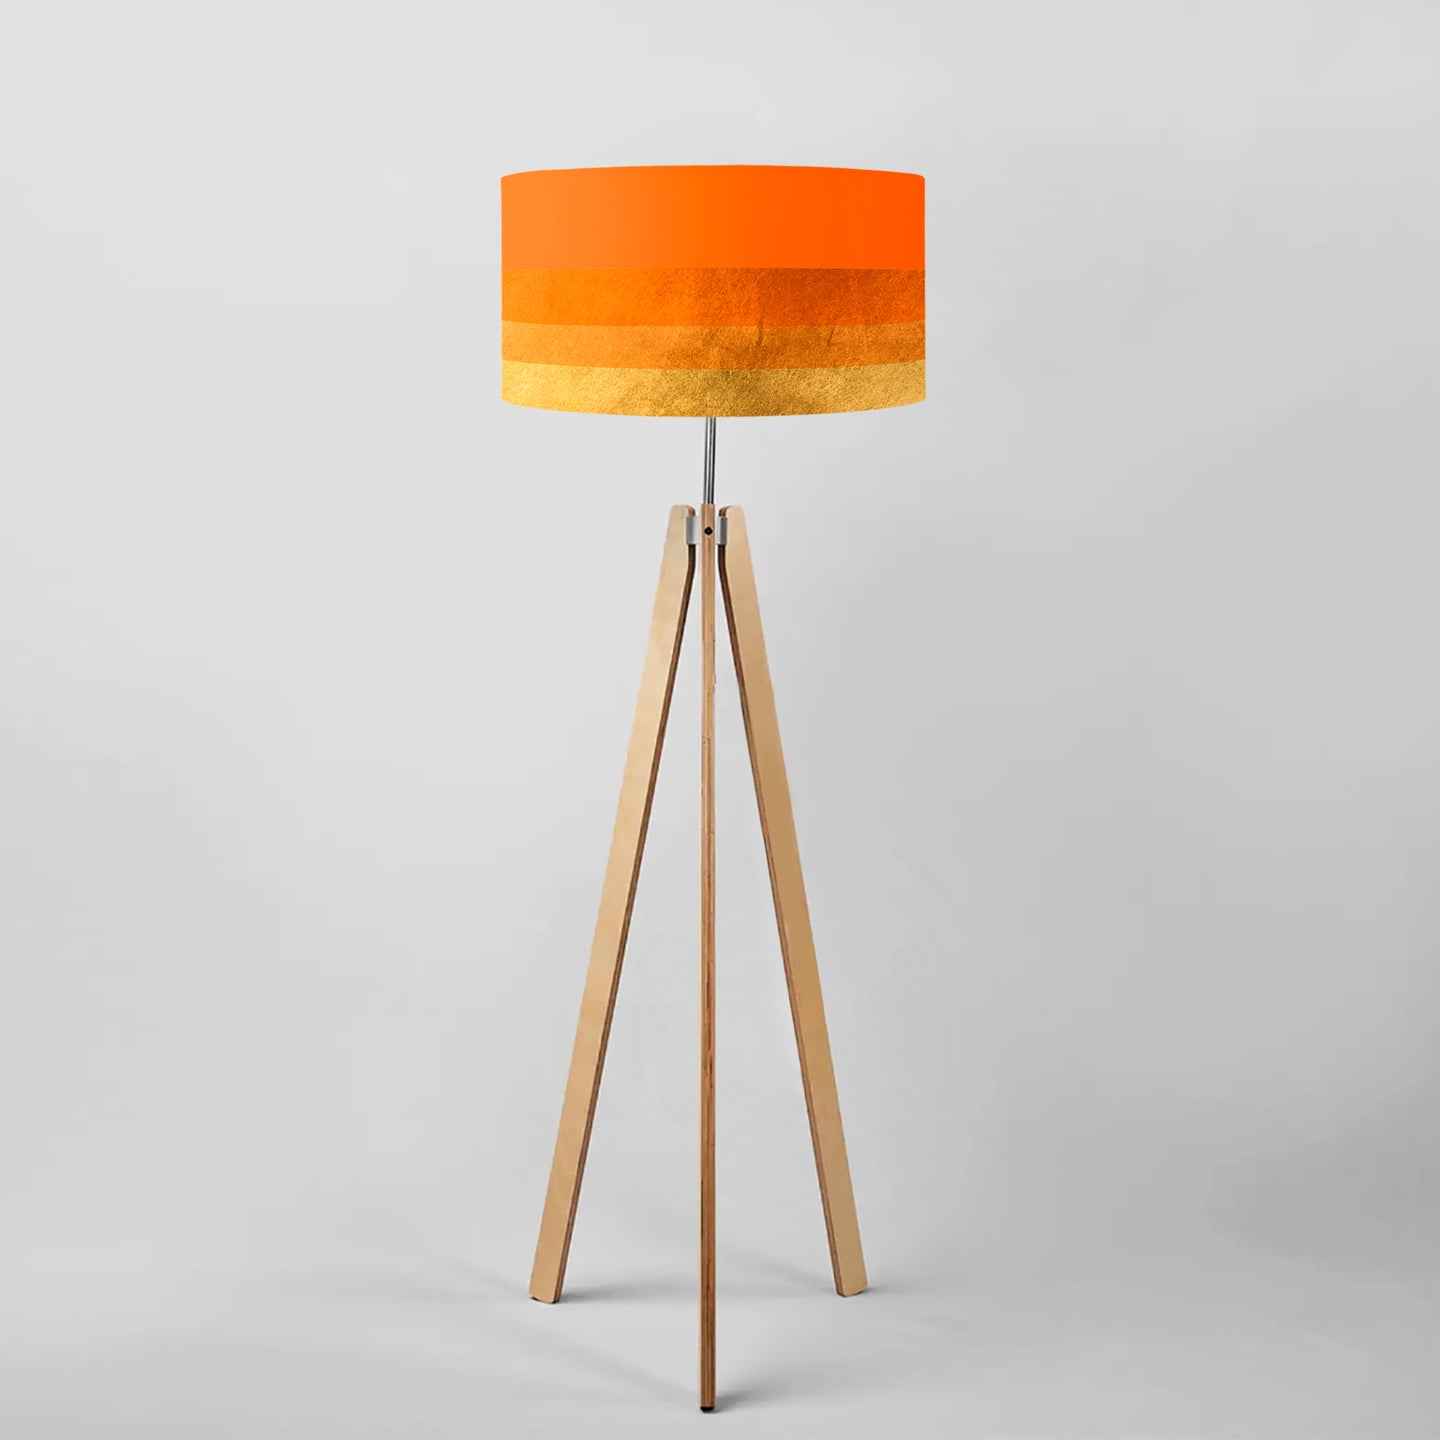 Gradient Orange-Gold drum lampshade, Gold Lining, Diameter 40cm (16